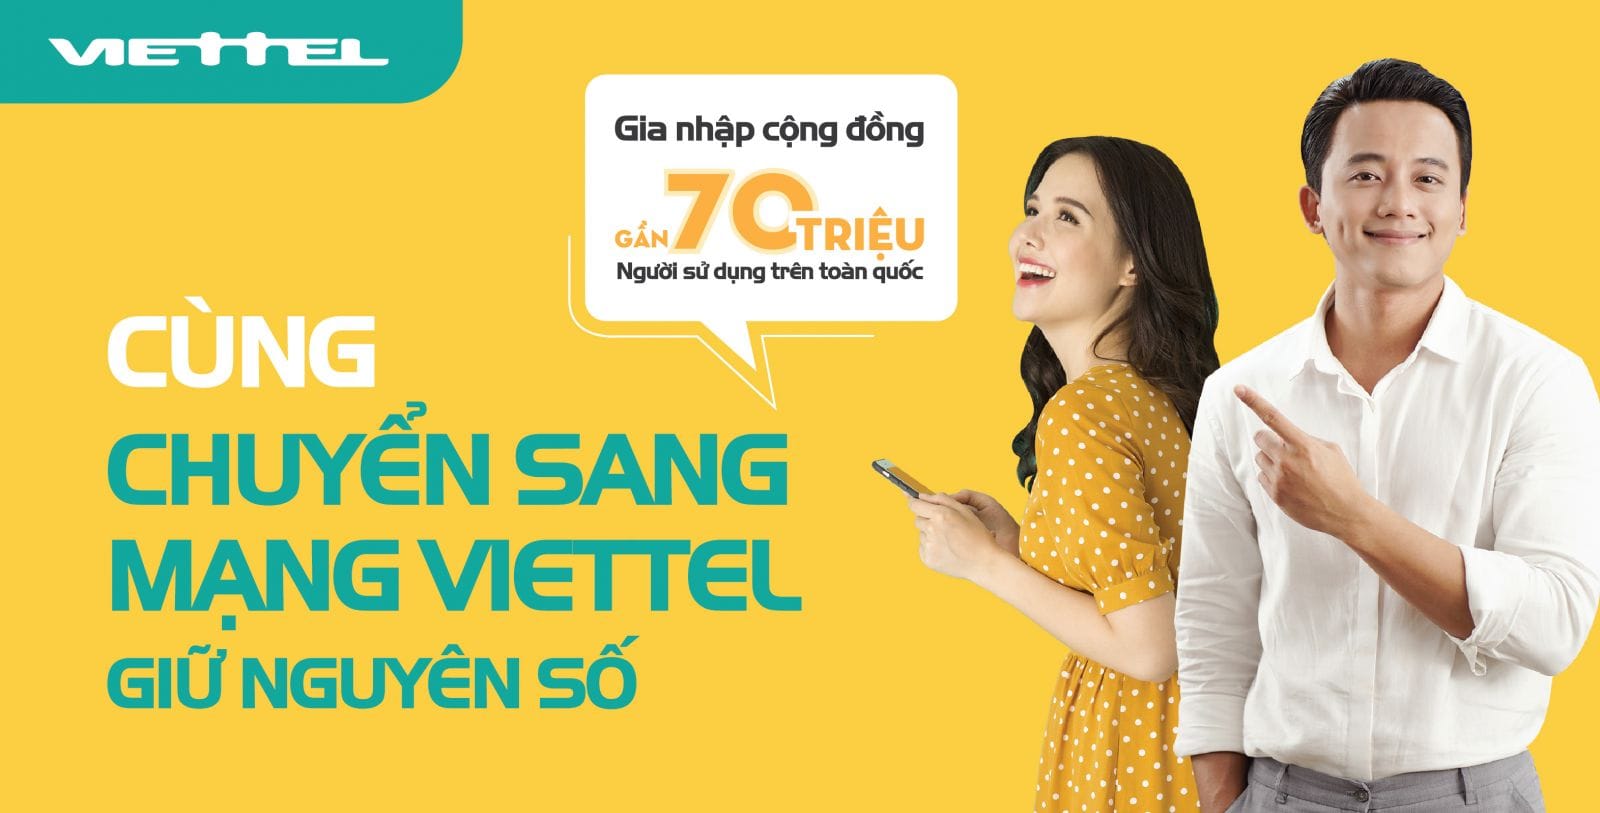 Viettel sẵn sàng cung cấp dịch vụ chuyển mạng giữ số từ ngày 16/11/2018